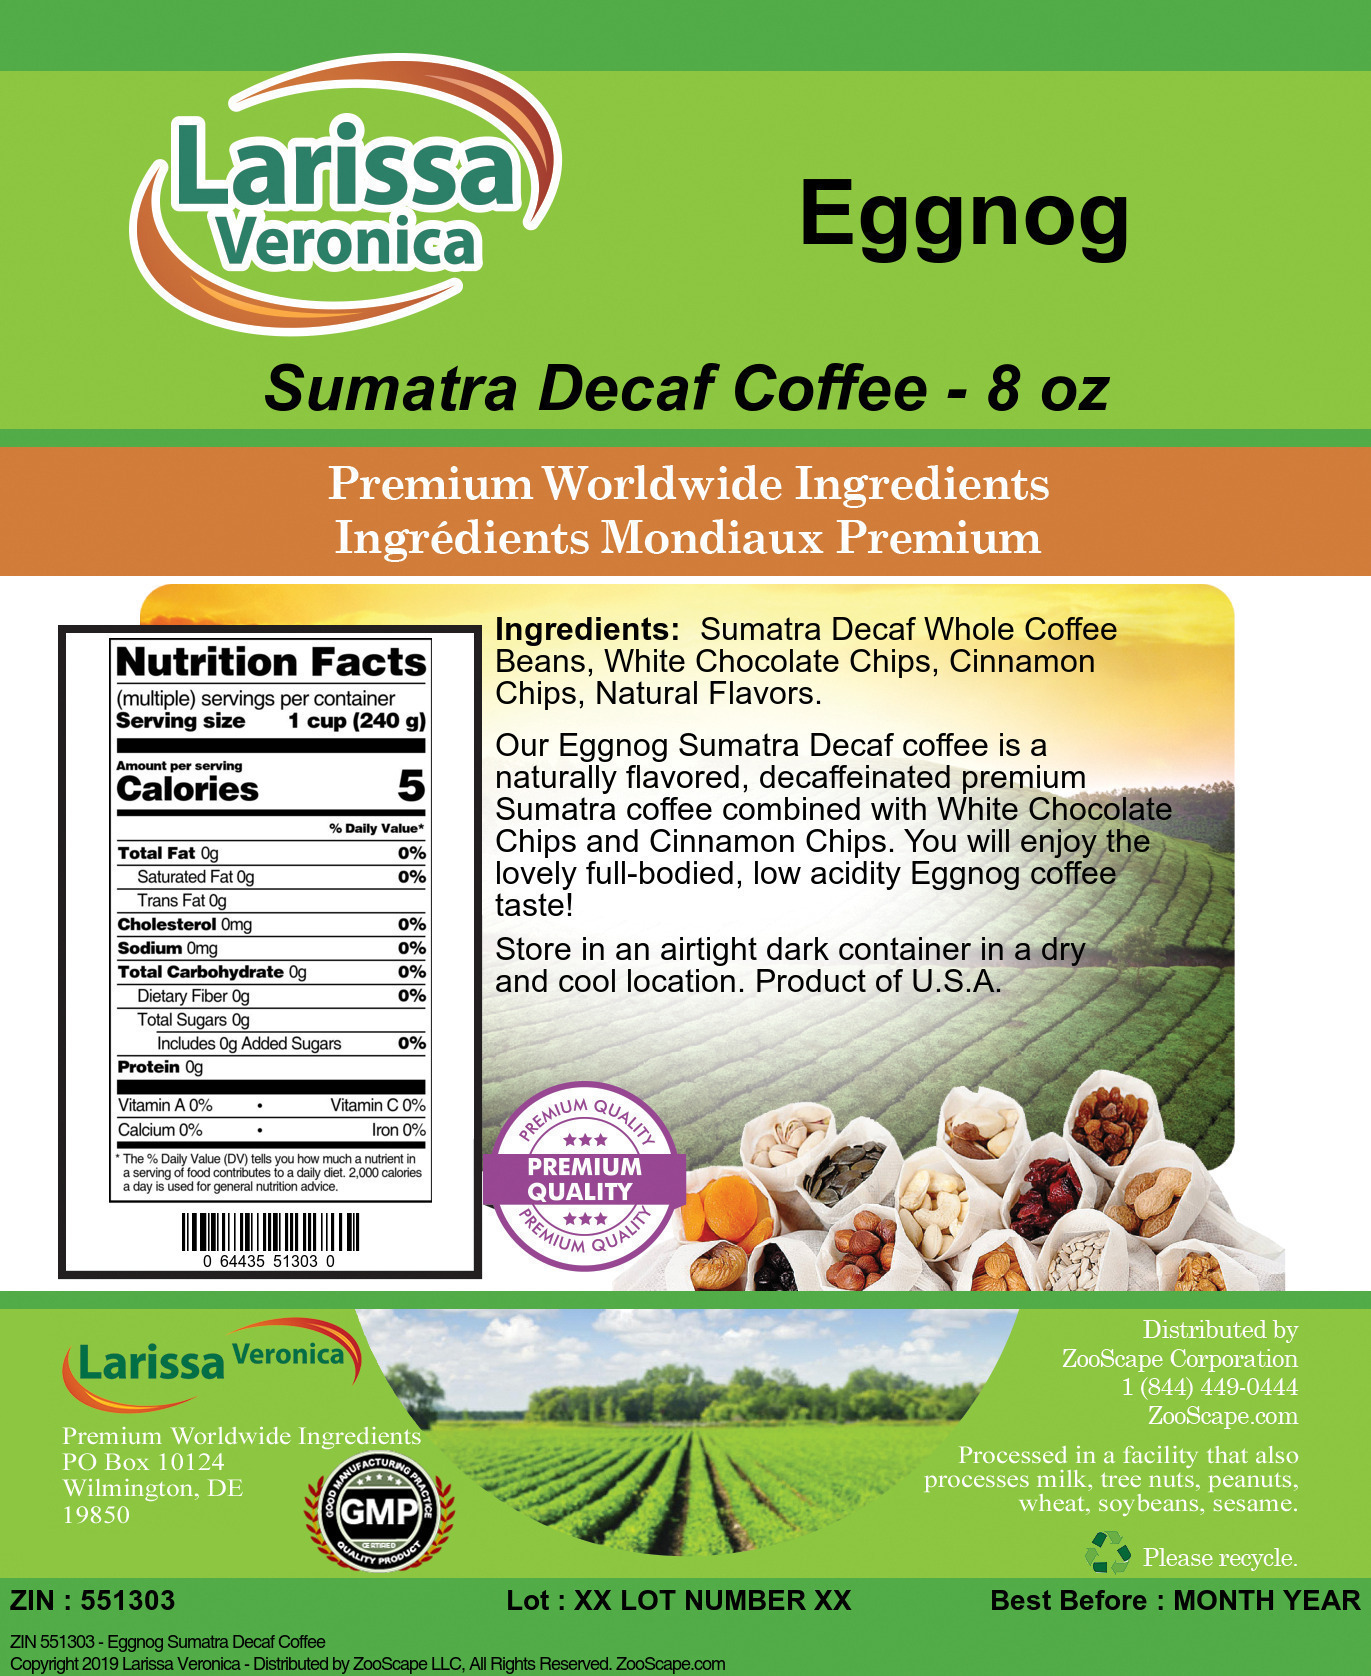 Eggnog Sumatra Decaf Coffee - Label